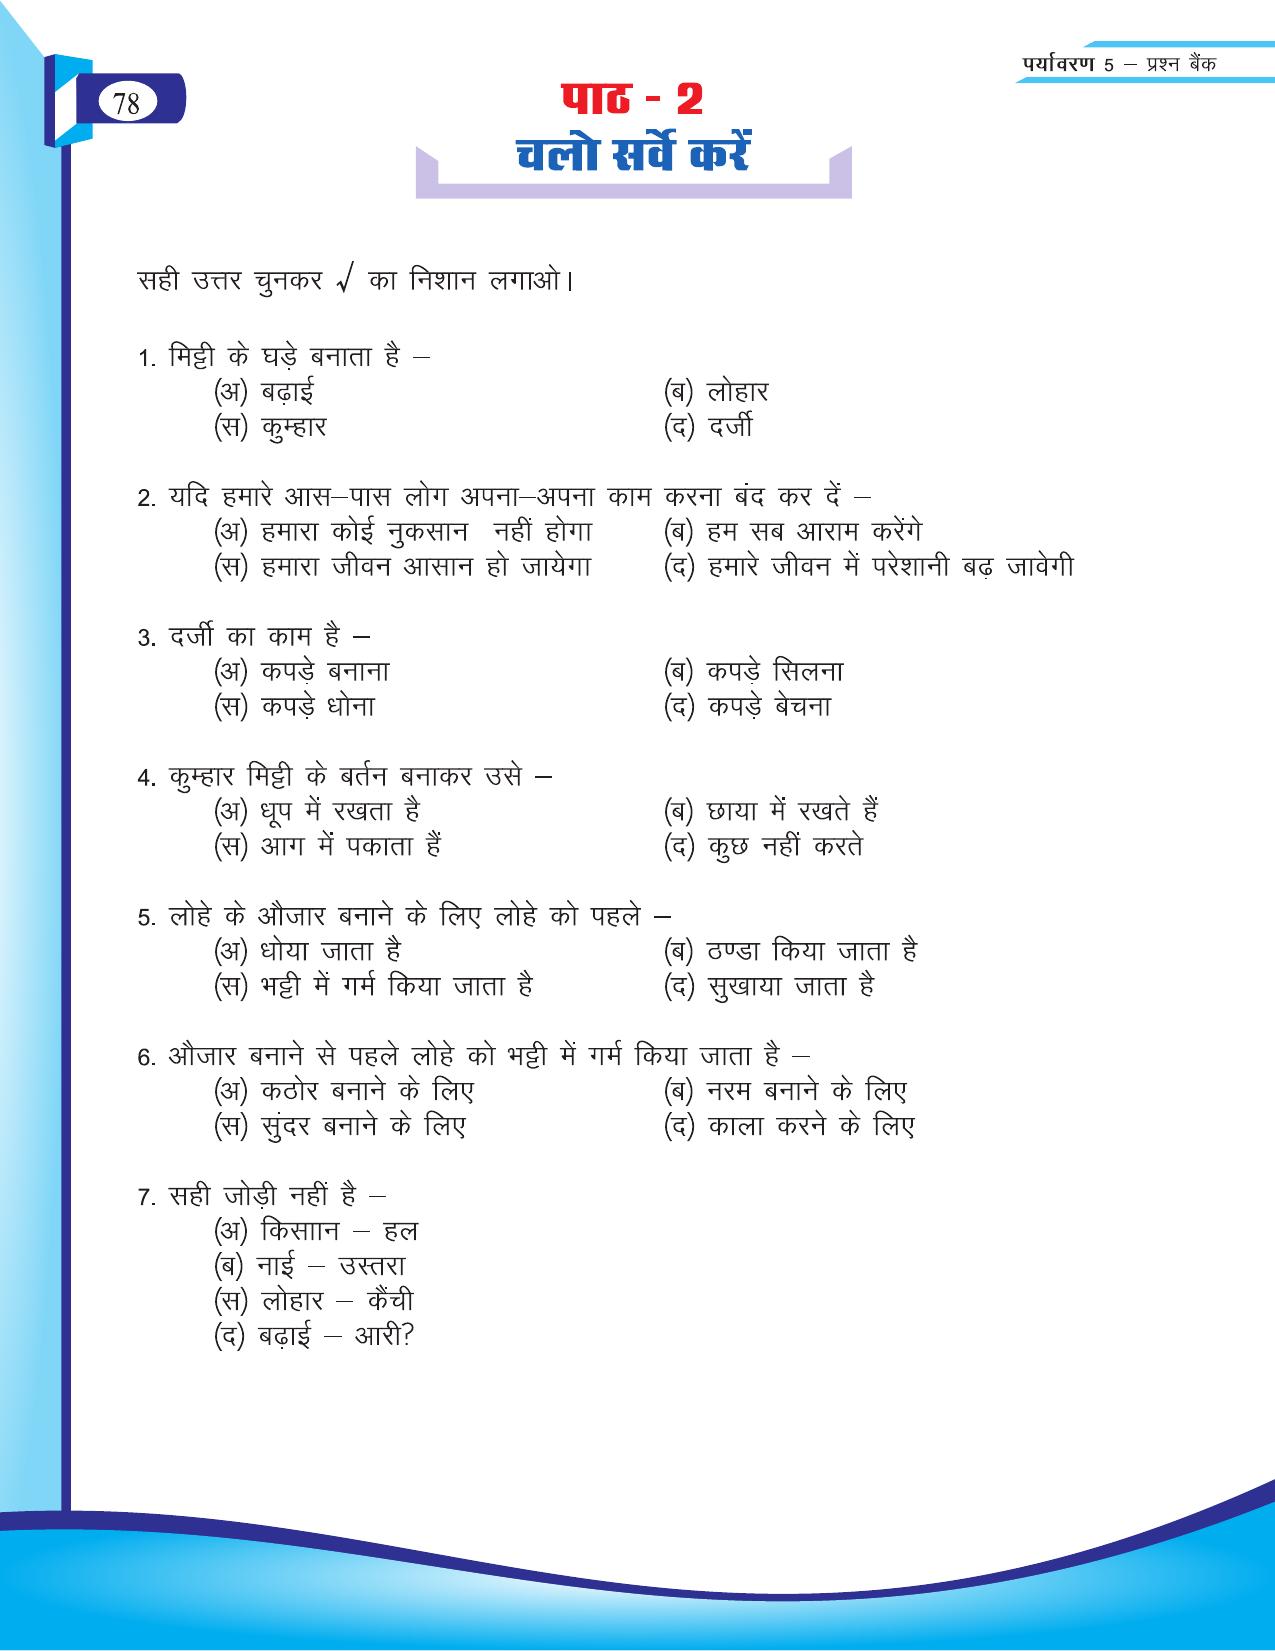 Chhattisgarh Board Class 5 EVS Question Bank 2015-16 - Page 4